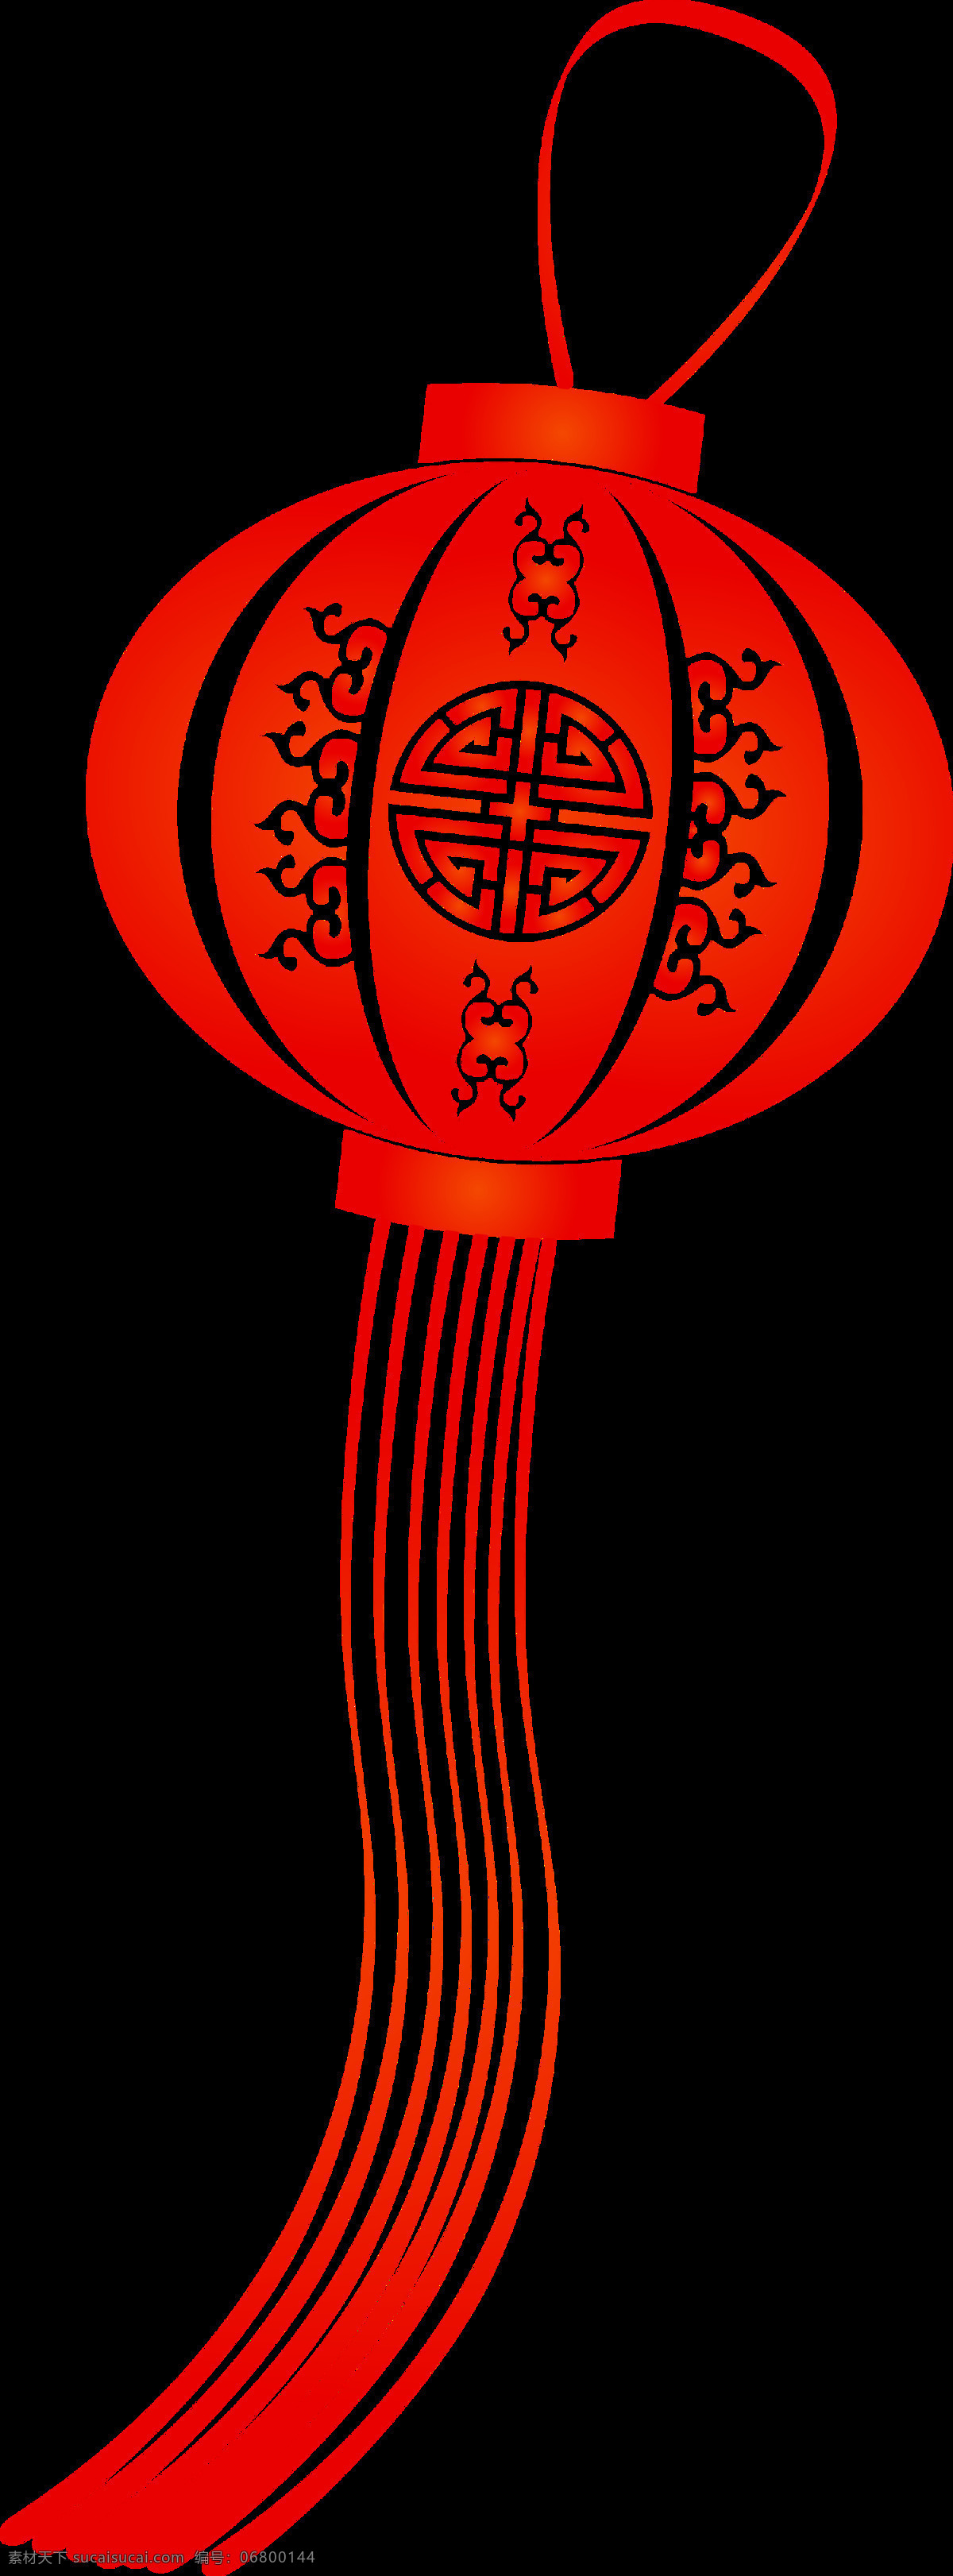 中国 风 欢度 新春 红色 灯笼 节日 元素 白色花纹 红色灯笼 节日元素 清新风格 中国风